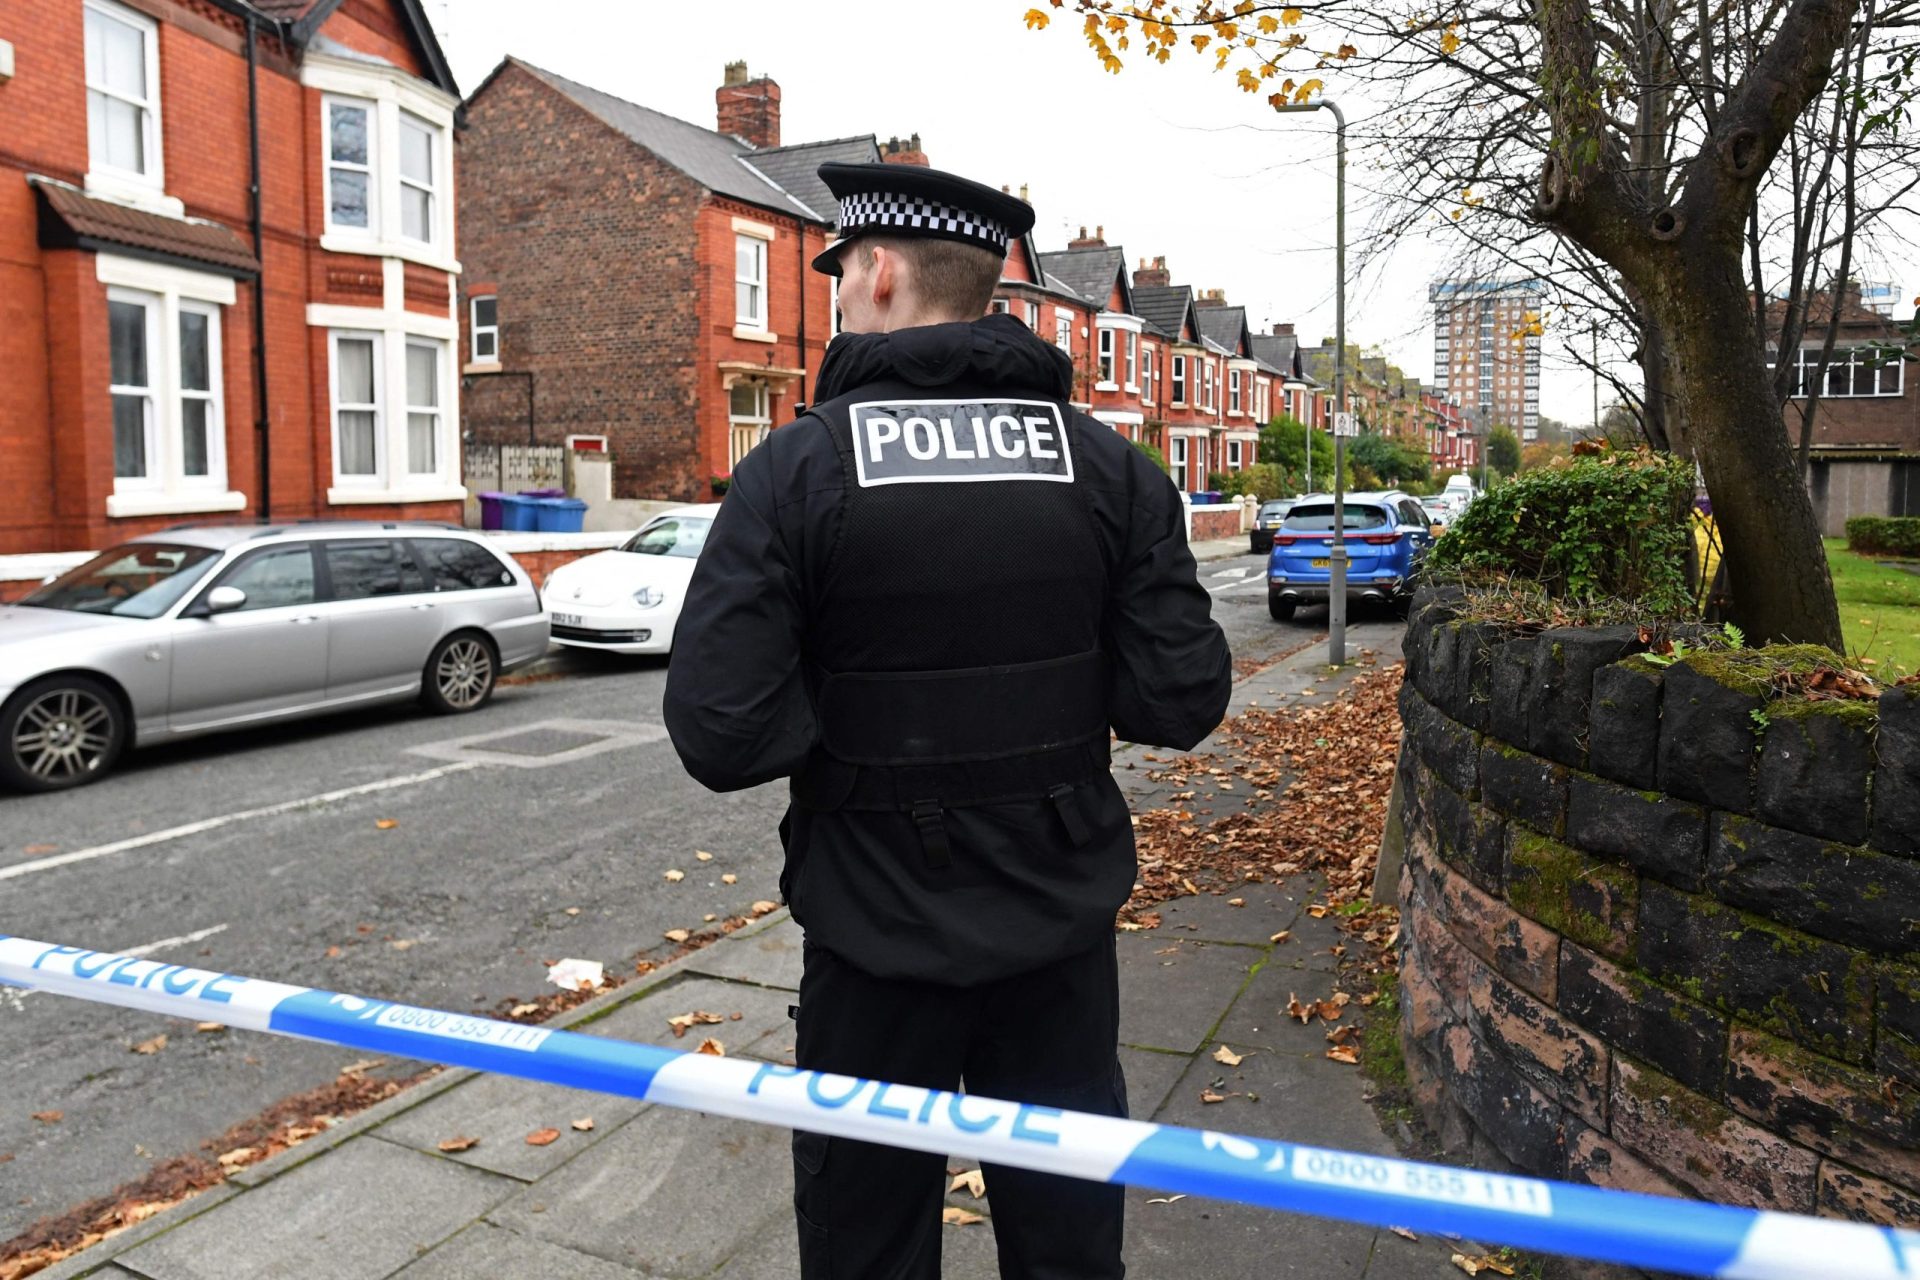 Reino Unido sobe para o nível “grave” de alerta para o terrorismo após incidente com explosivo no interior do táxi